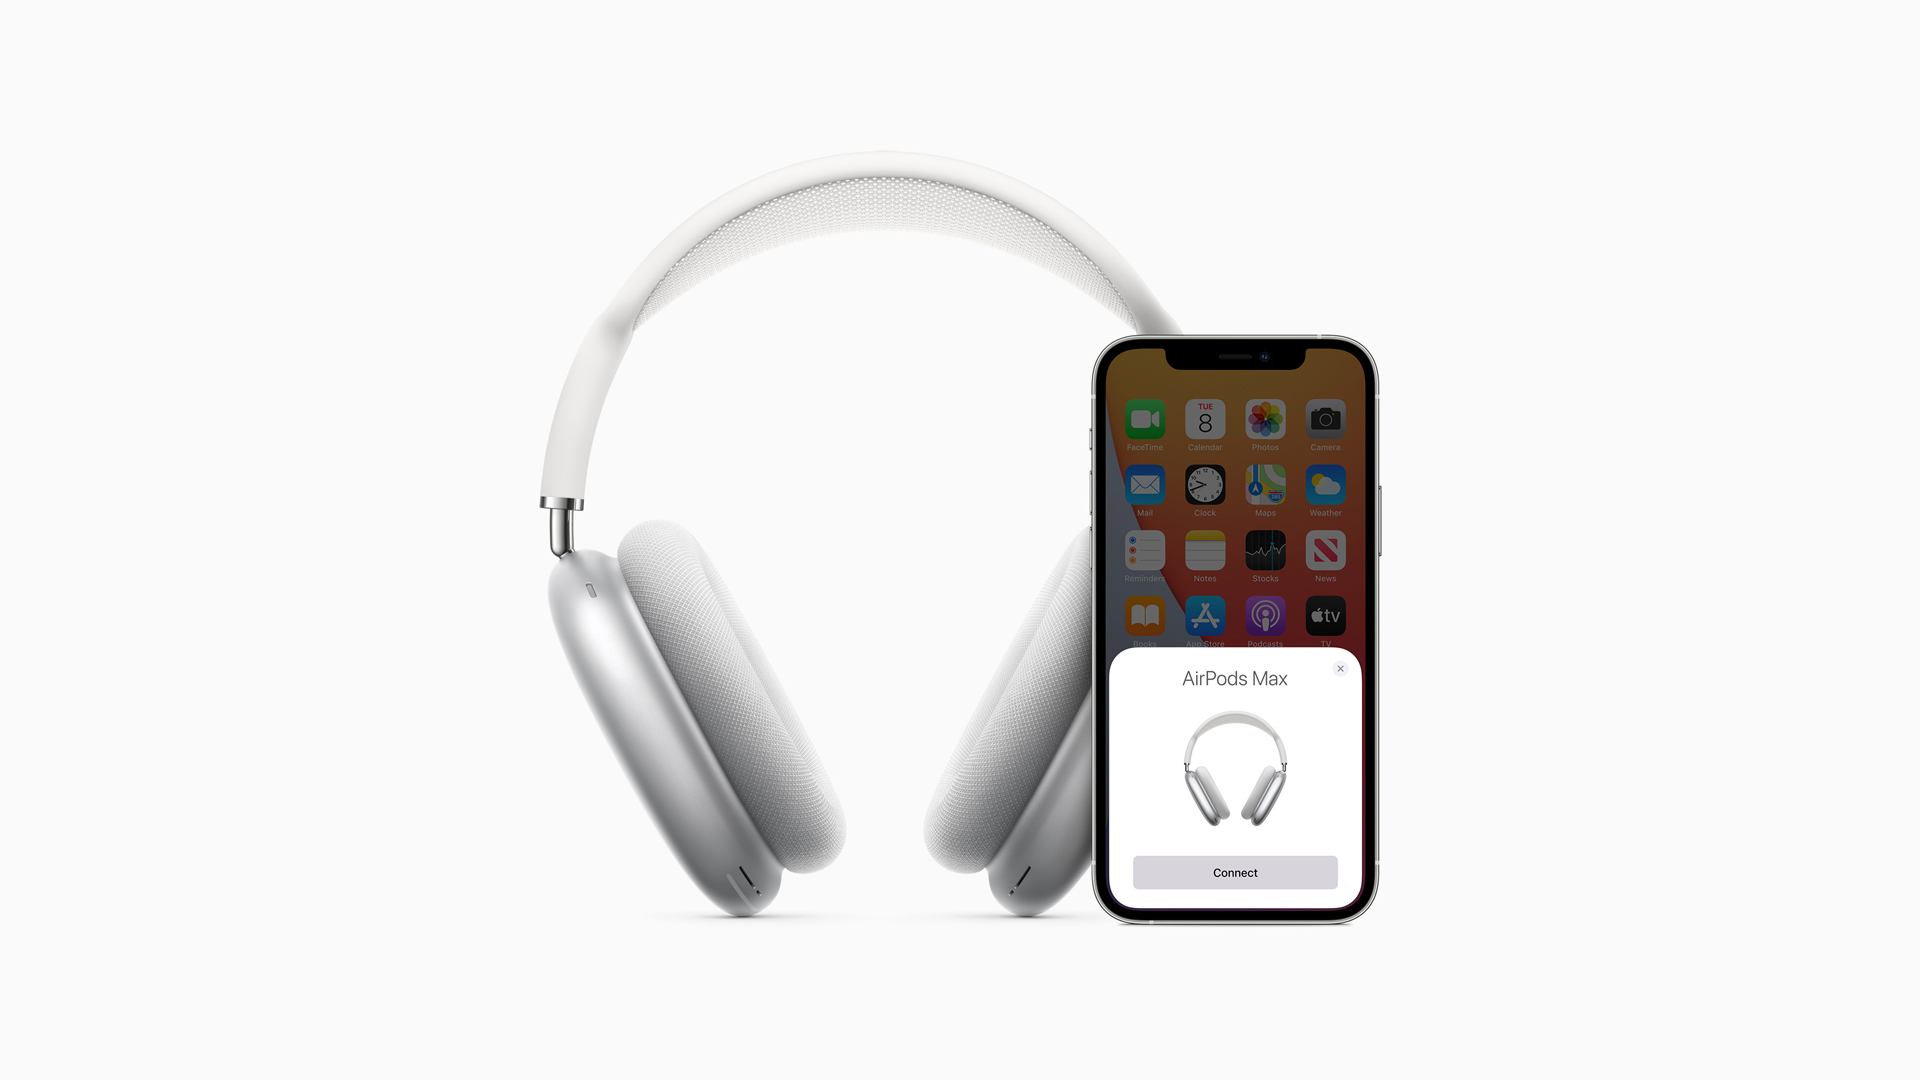 Emparelhamento do AirPods Max com o telefone iOS em um fundo branco.